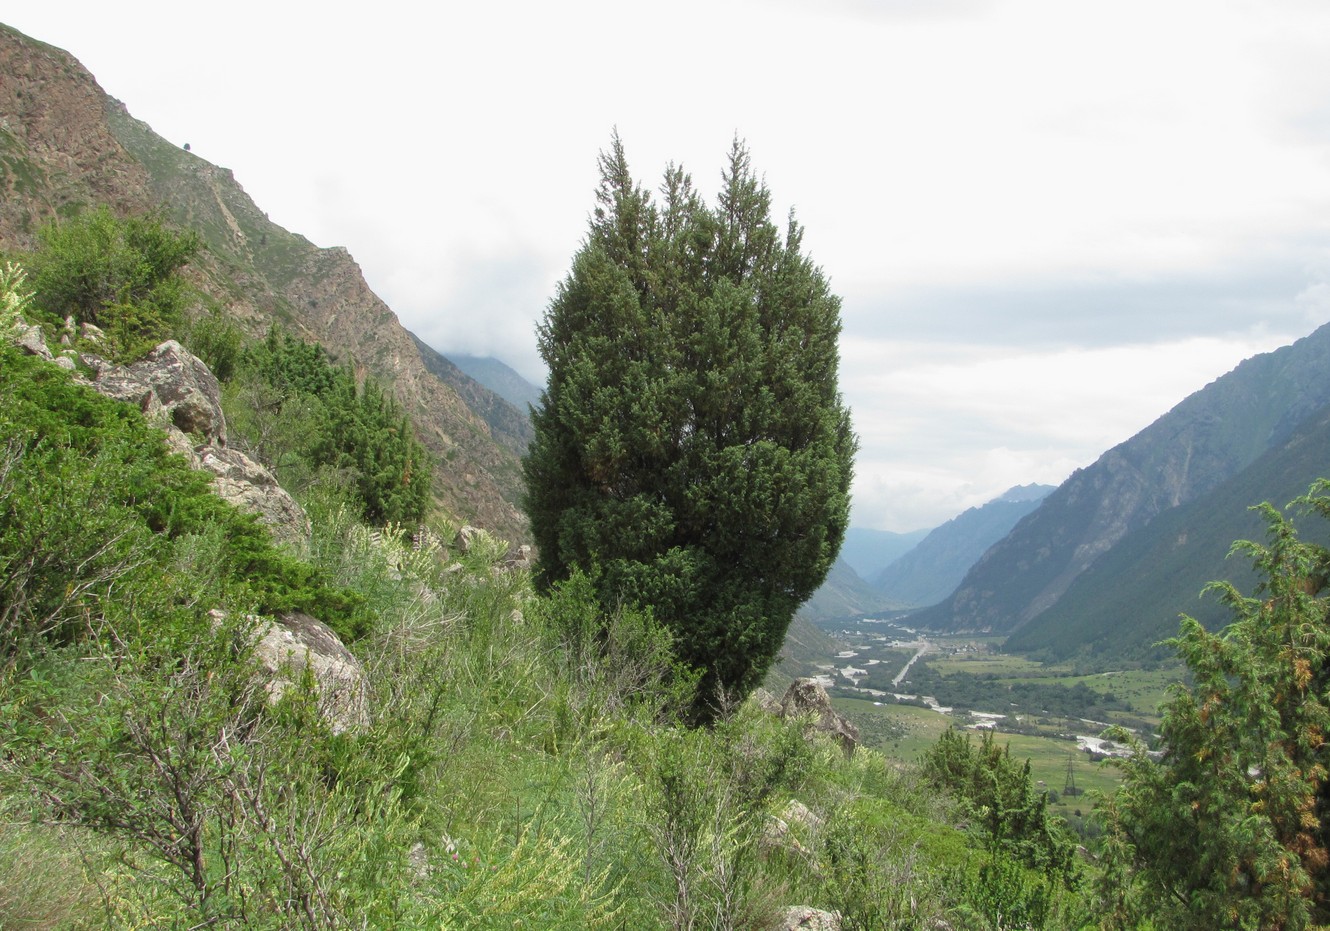 Image of Juniperus oblonga specimen.